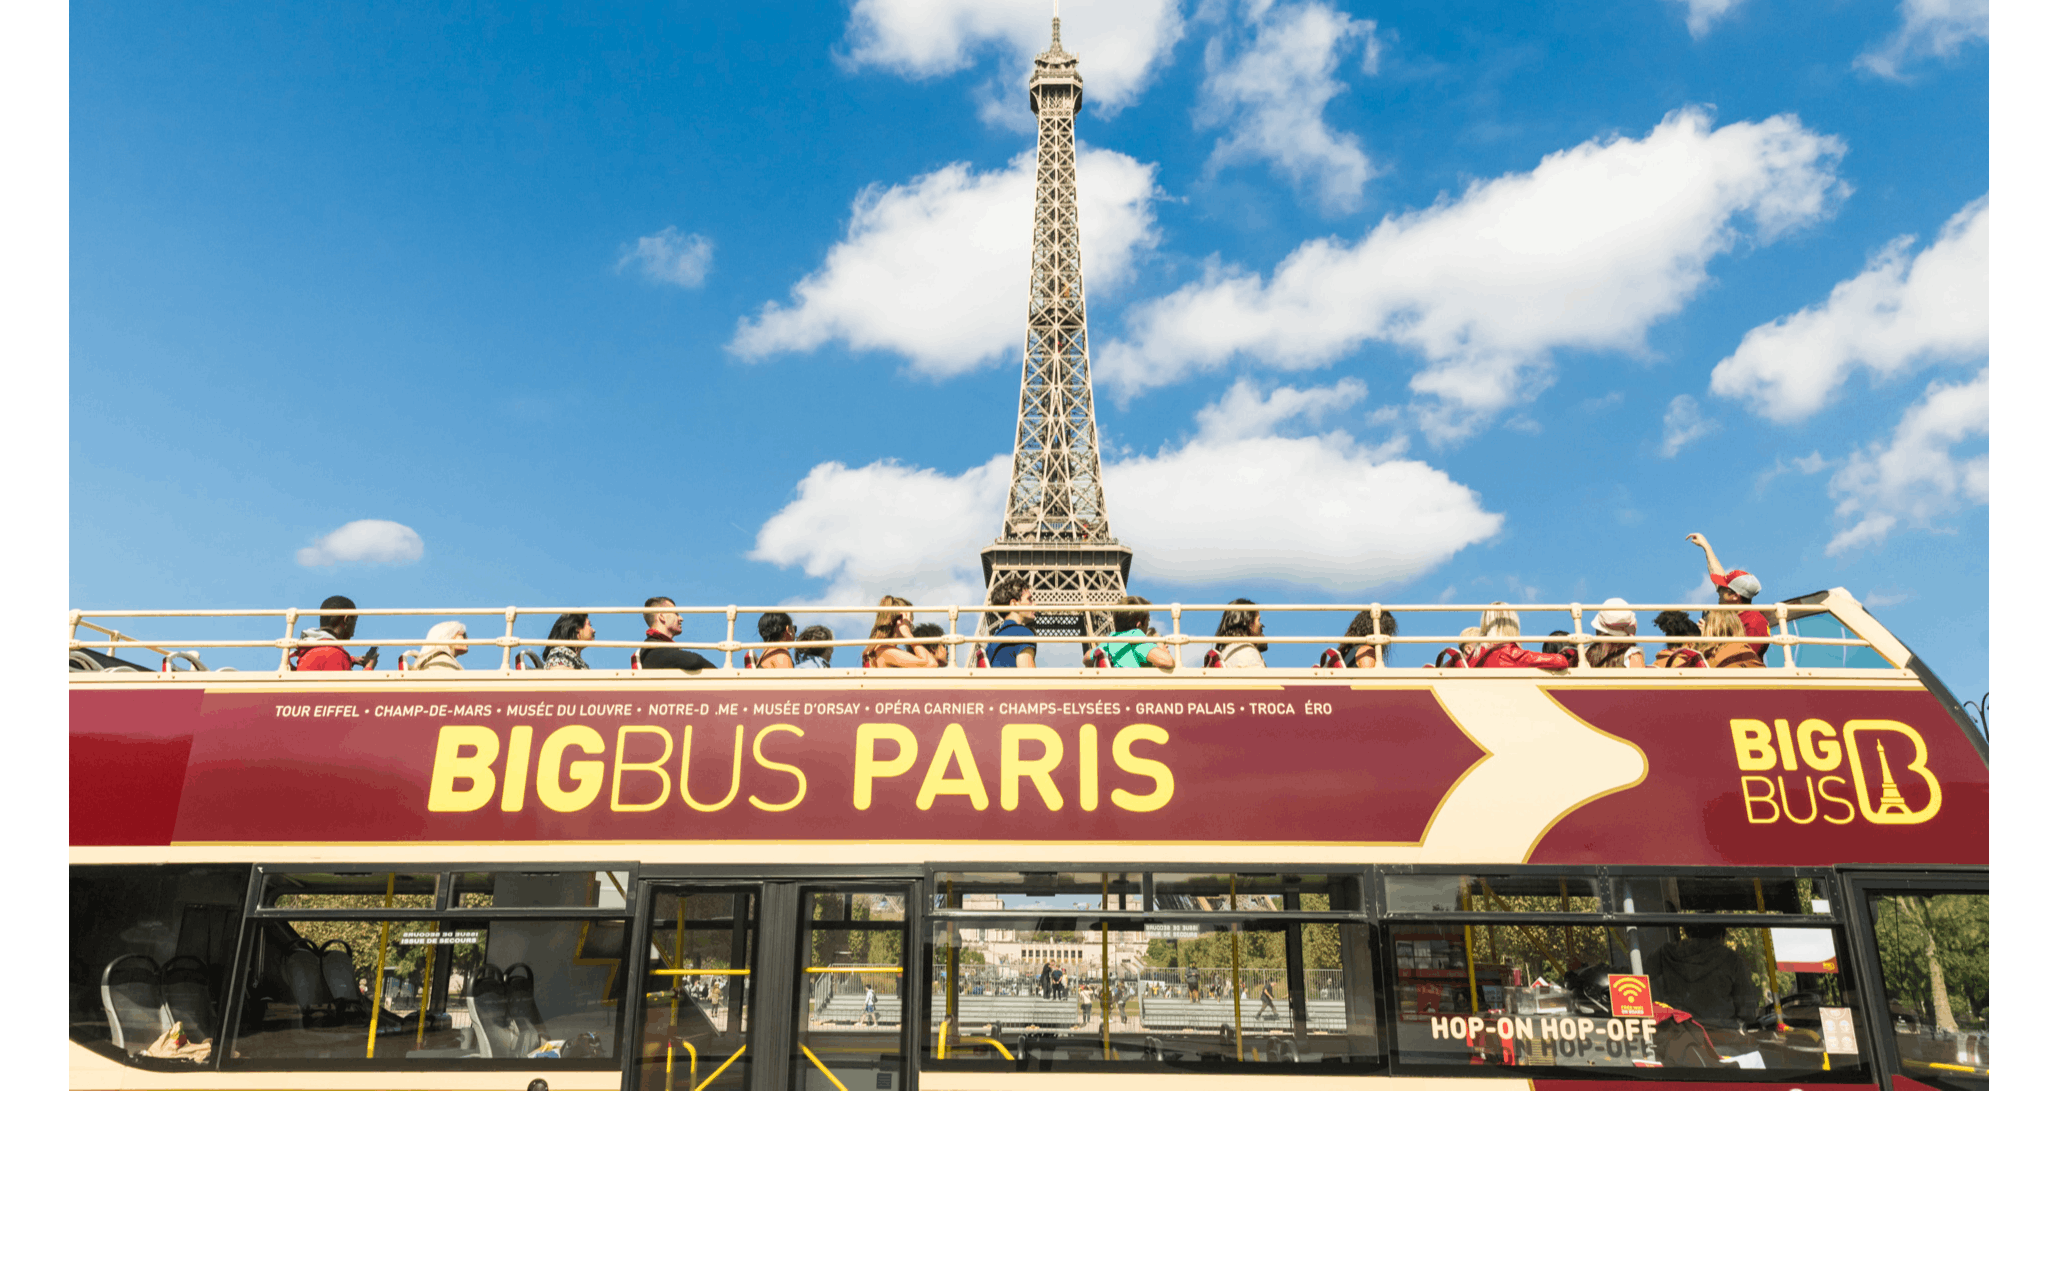 48 uur hop on, hop off Big Bus-tour door Parijs met panoramische riviercruise